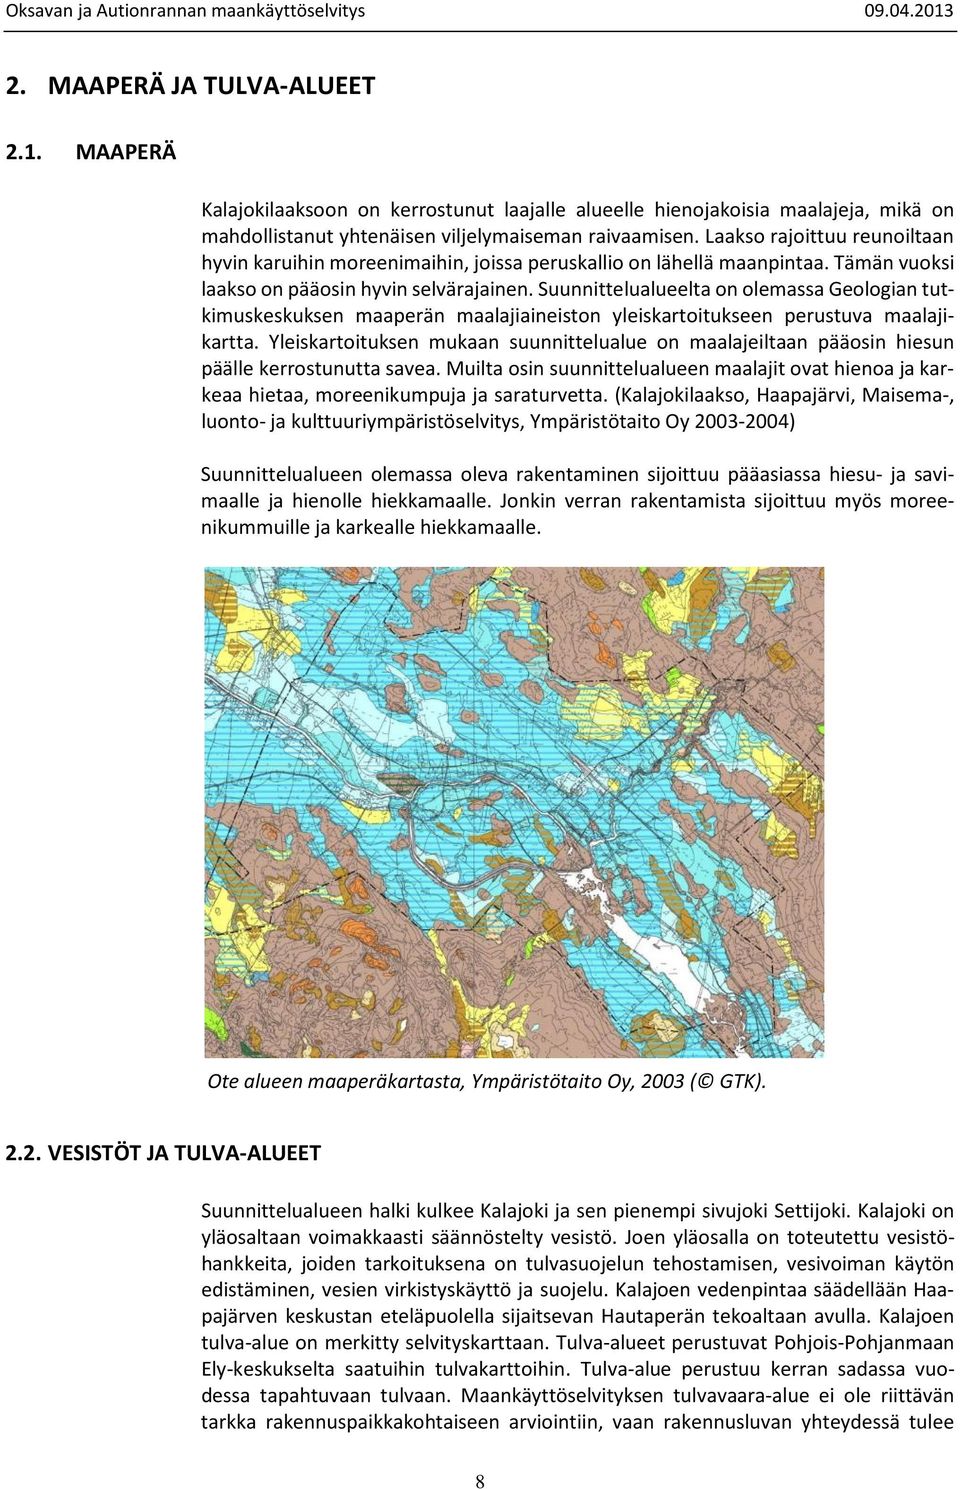 Suunnittelualueelta on olemassa Geologian tutkimuskeskuksen maaperän maalajiaineiston yleiskartoitukseen perustuva maalajikartta.